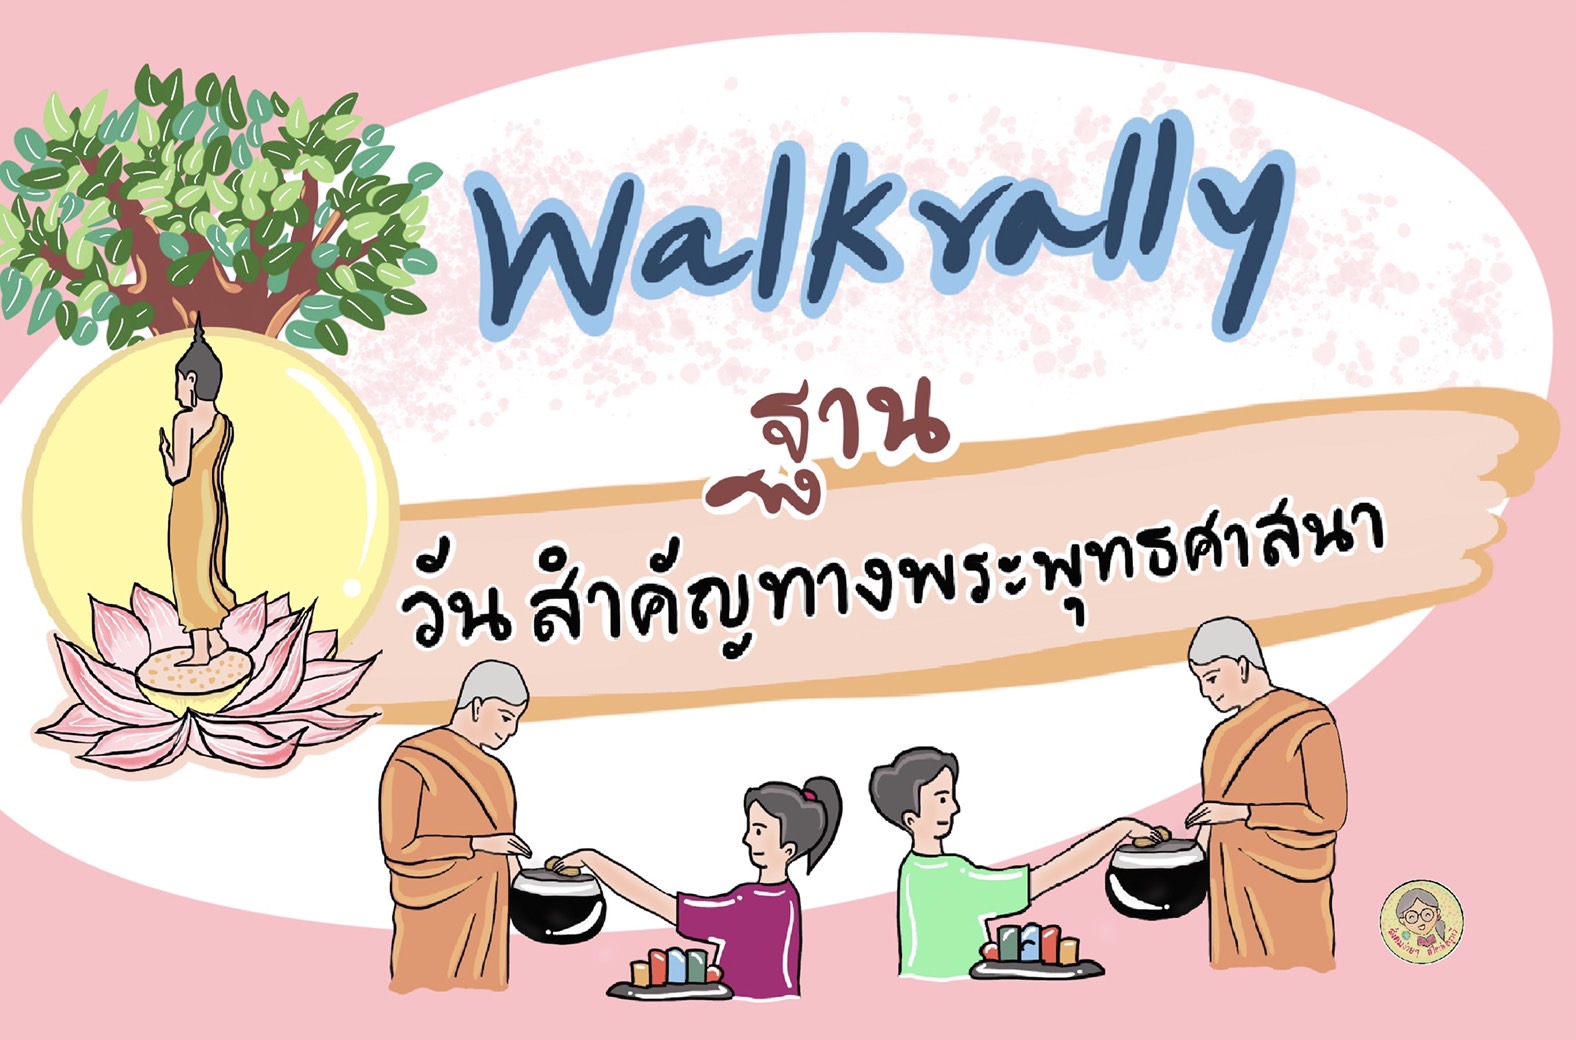 ภาพประกอบไอเดีย Walk Rally ฐานวันสำคัญทางพระพุทธศาสนา